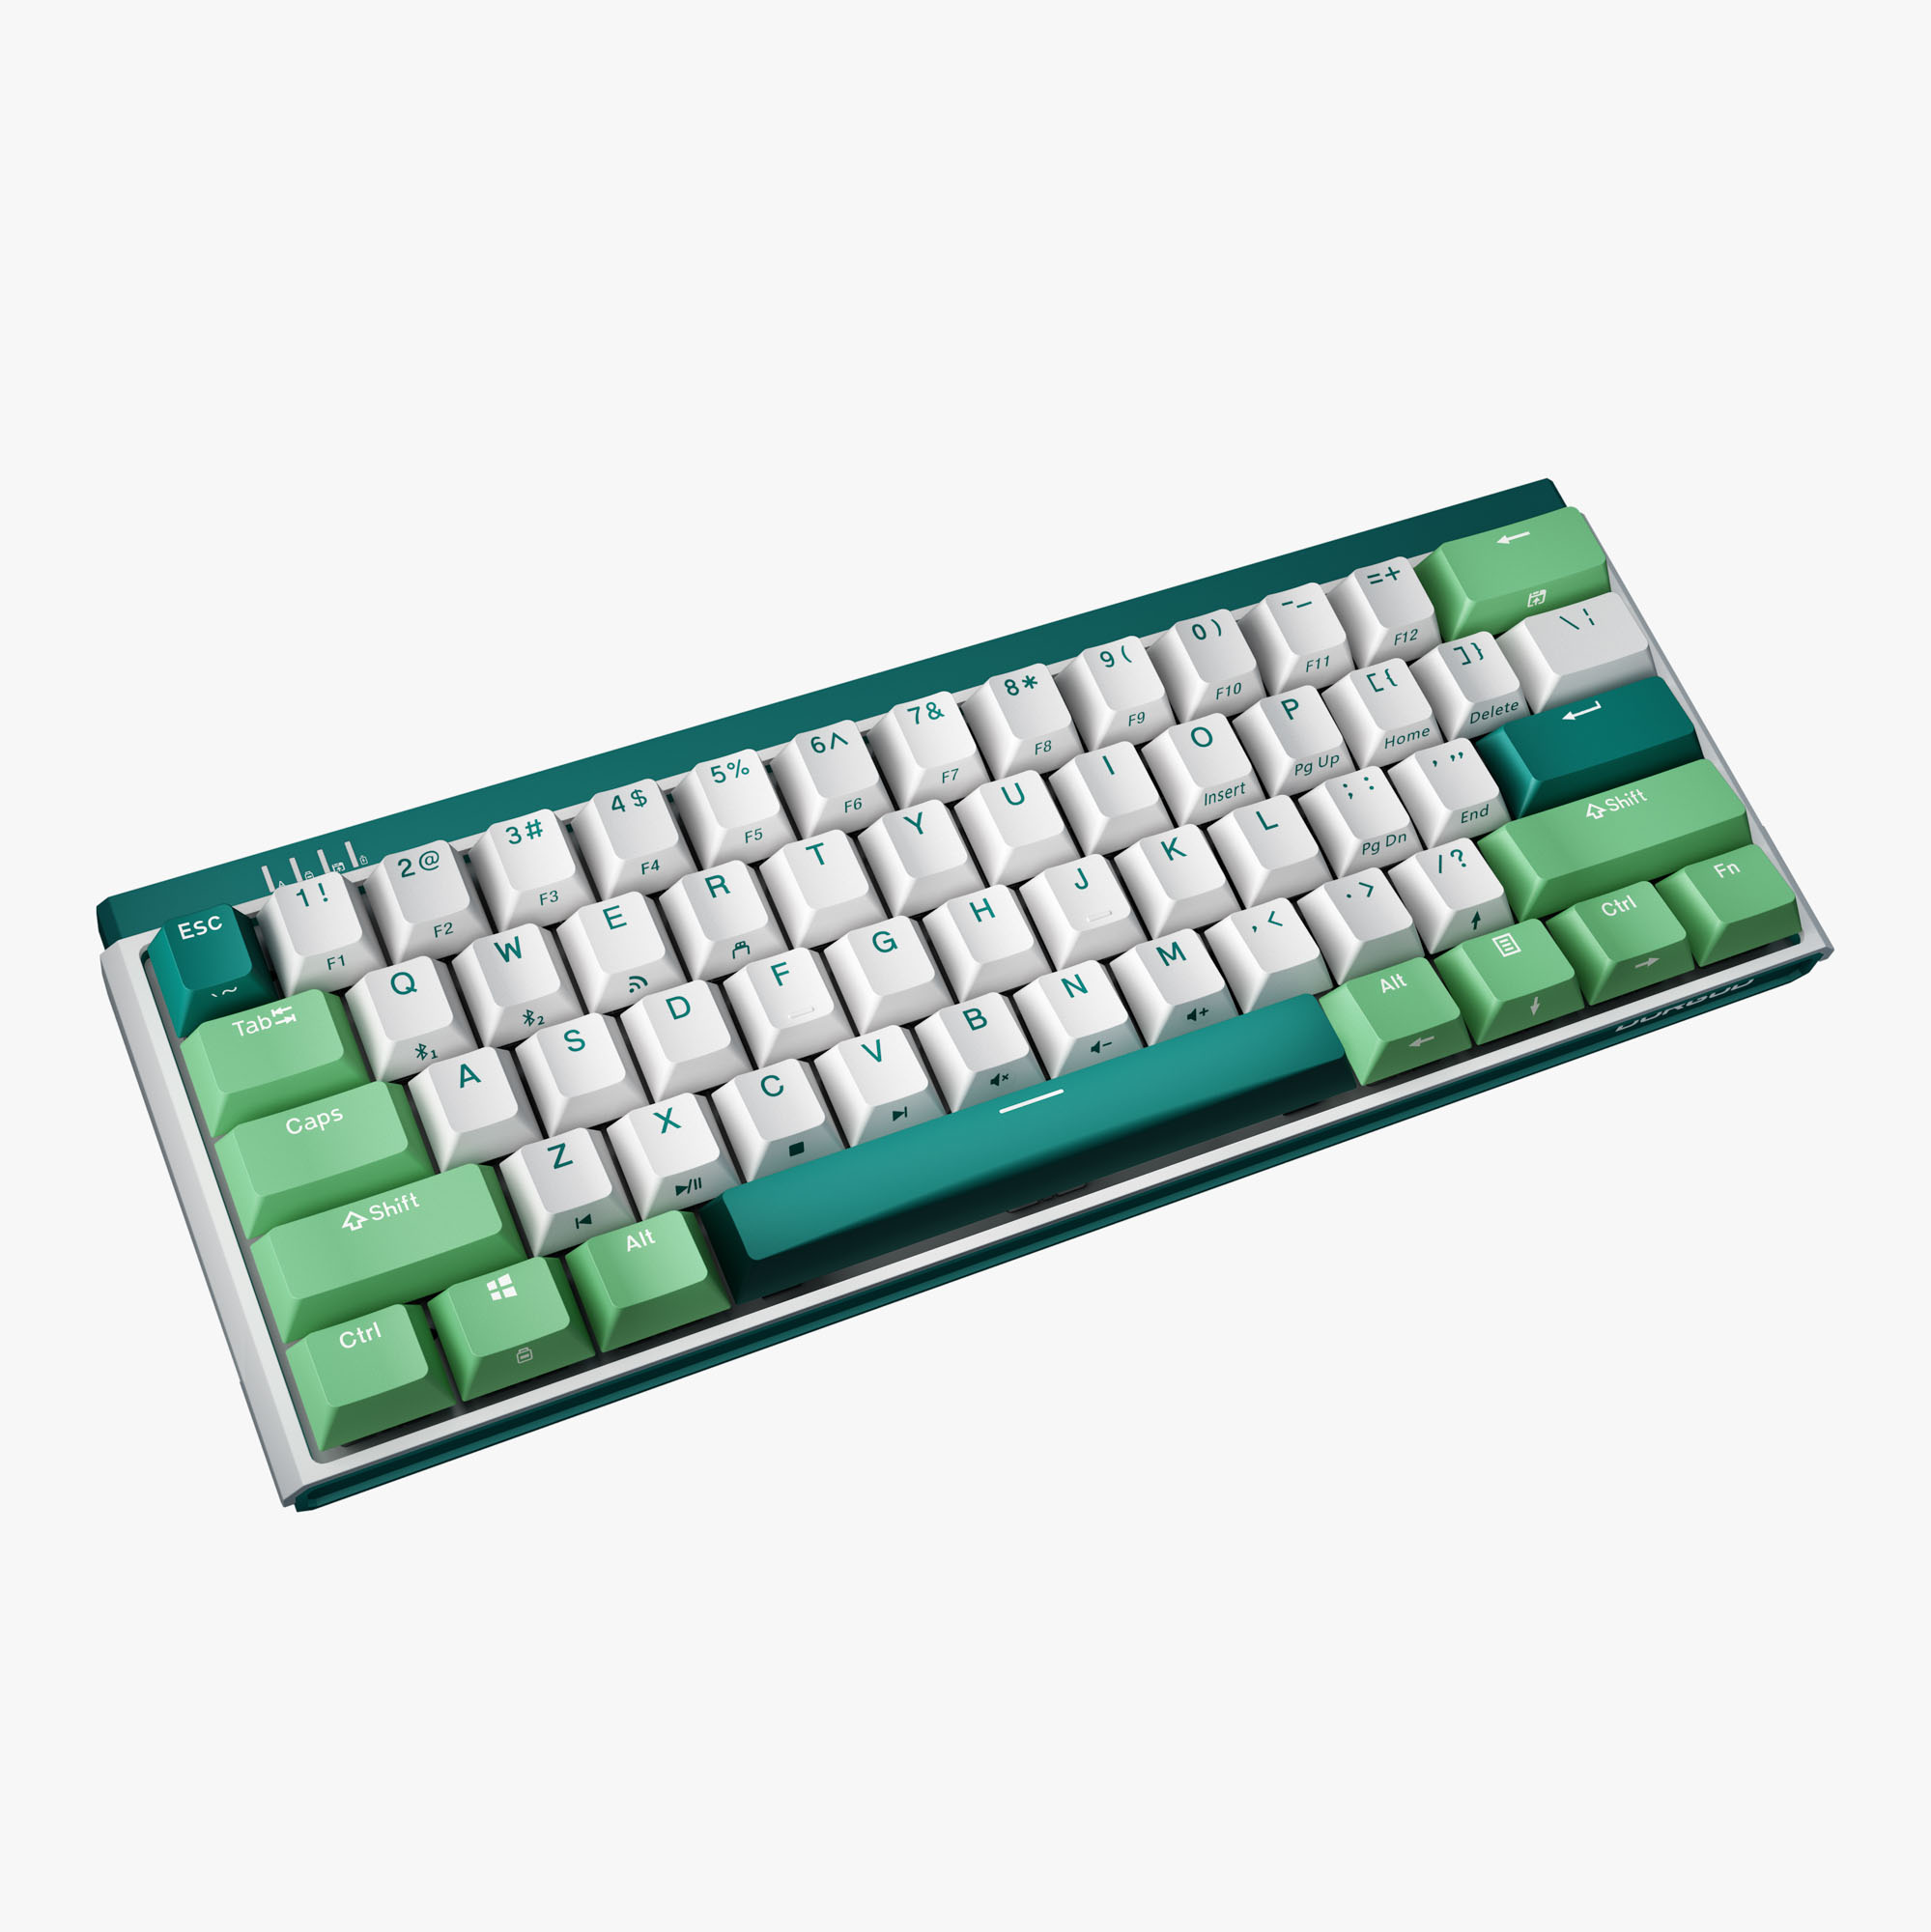 DURGOD K330w/ K330w PLUS Mint | Green Mechanical Keyboard with Versatility